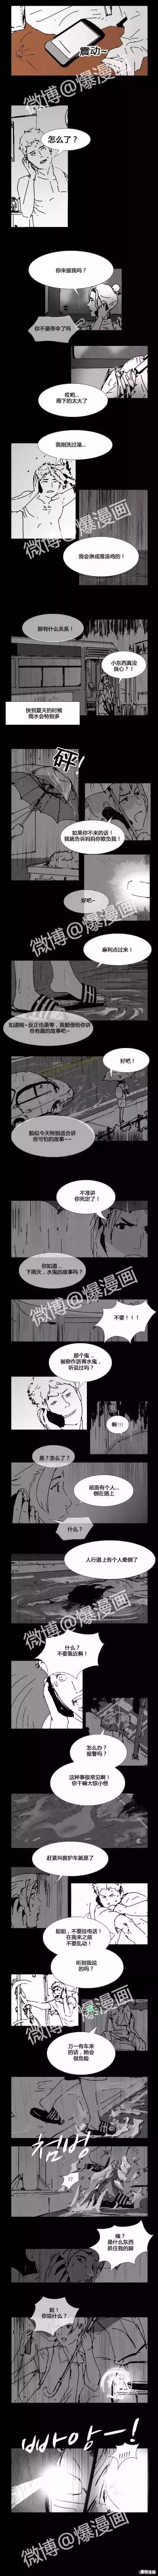 韩国民间怪谈漫画《沥青水鬼》，不一样的鬼故事